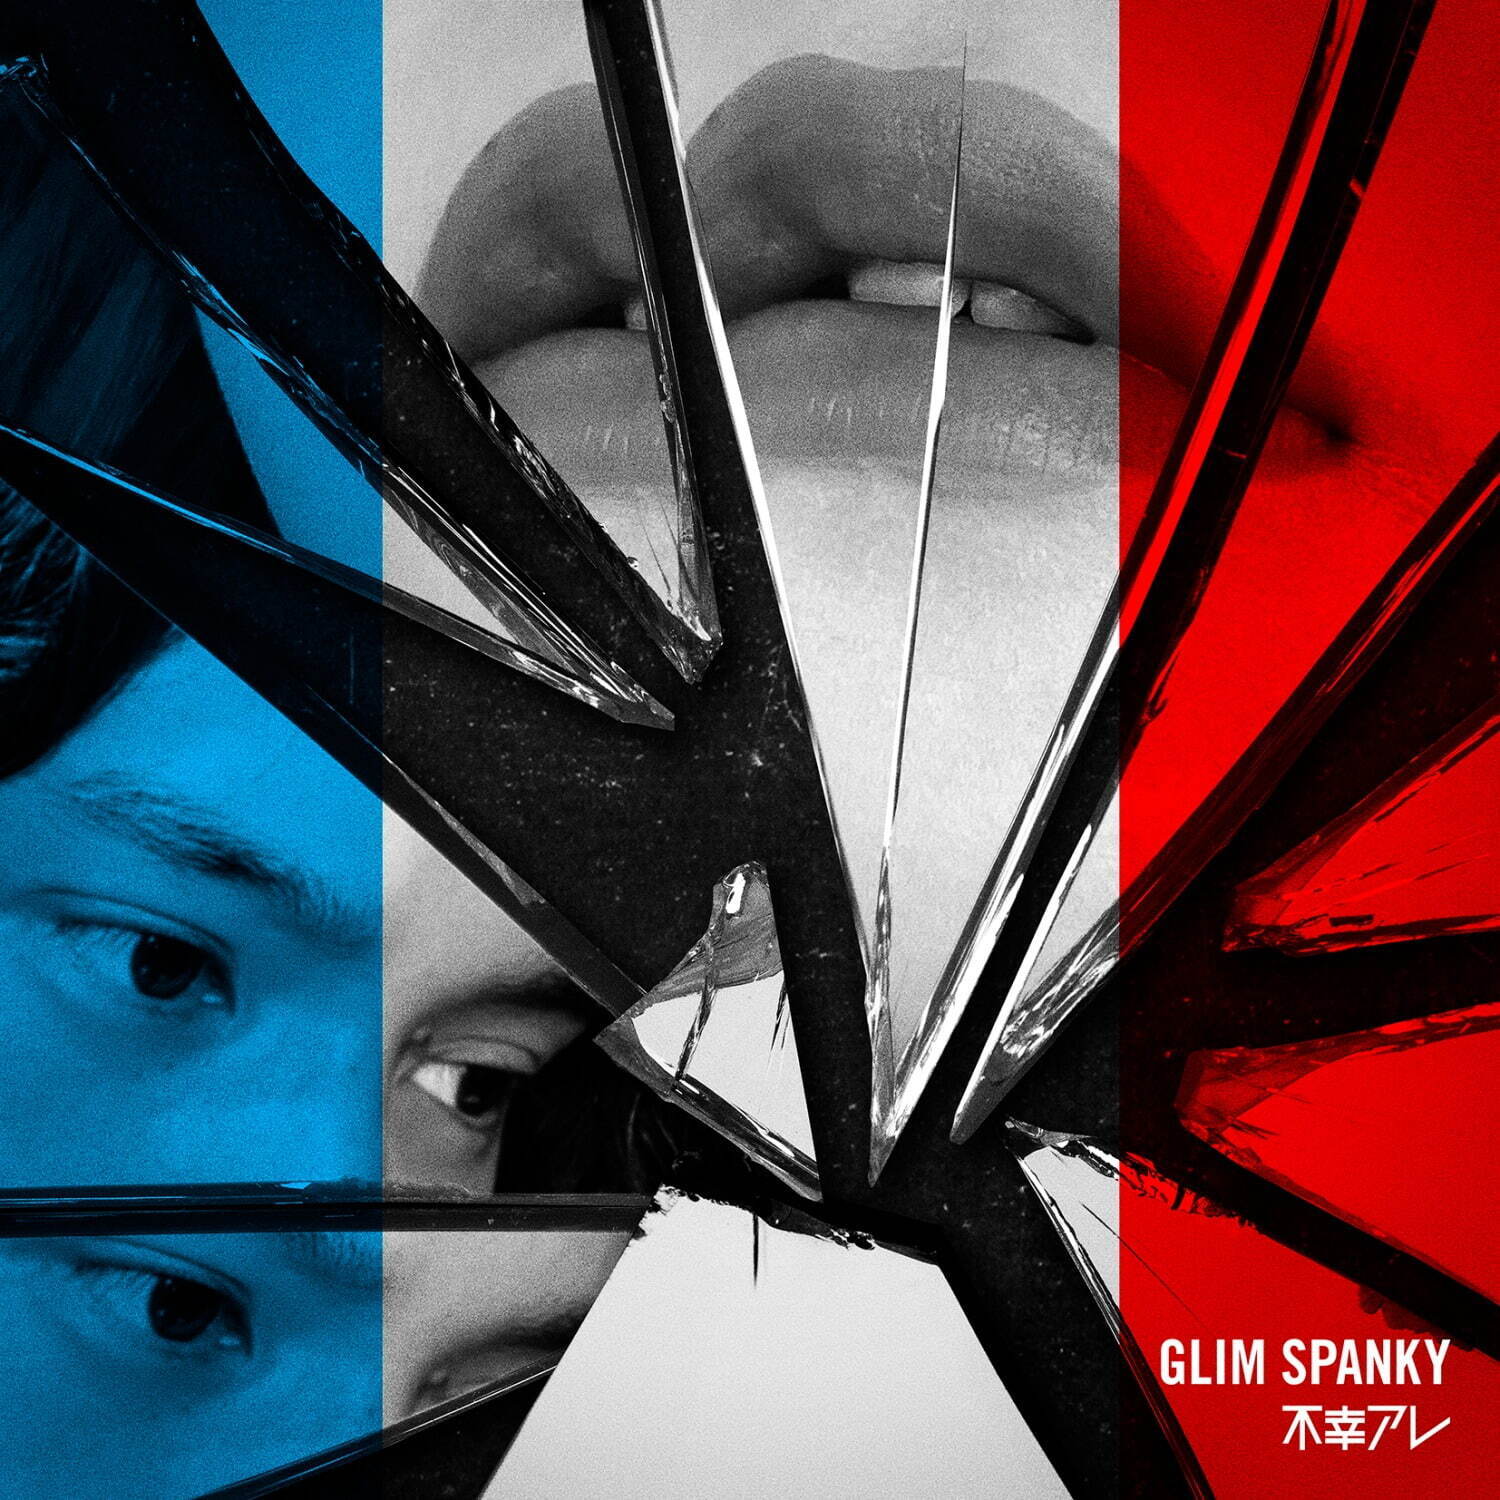 GLIM SPANKY 新曲「不幸アレ」ジャケット写真